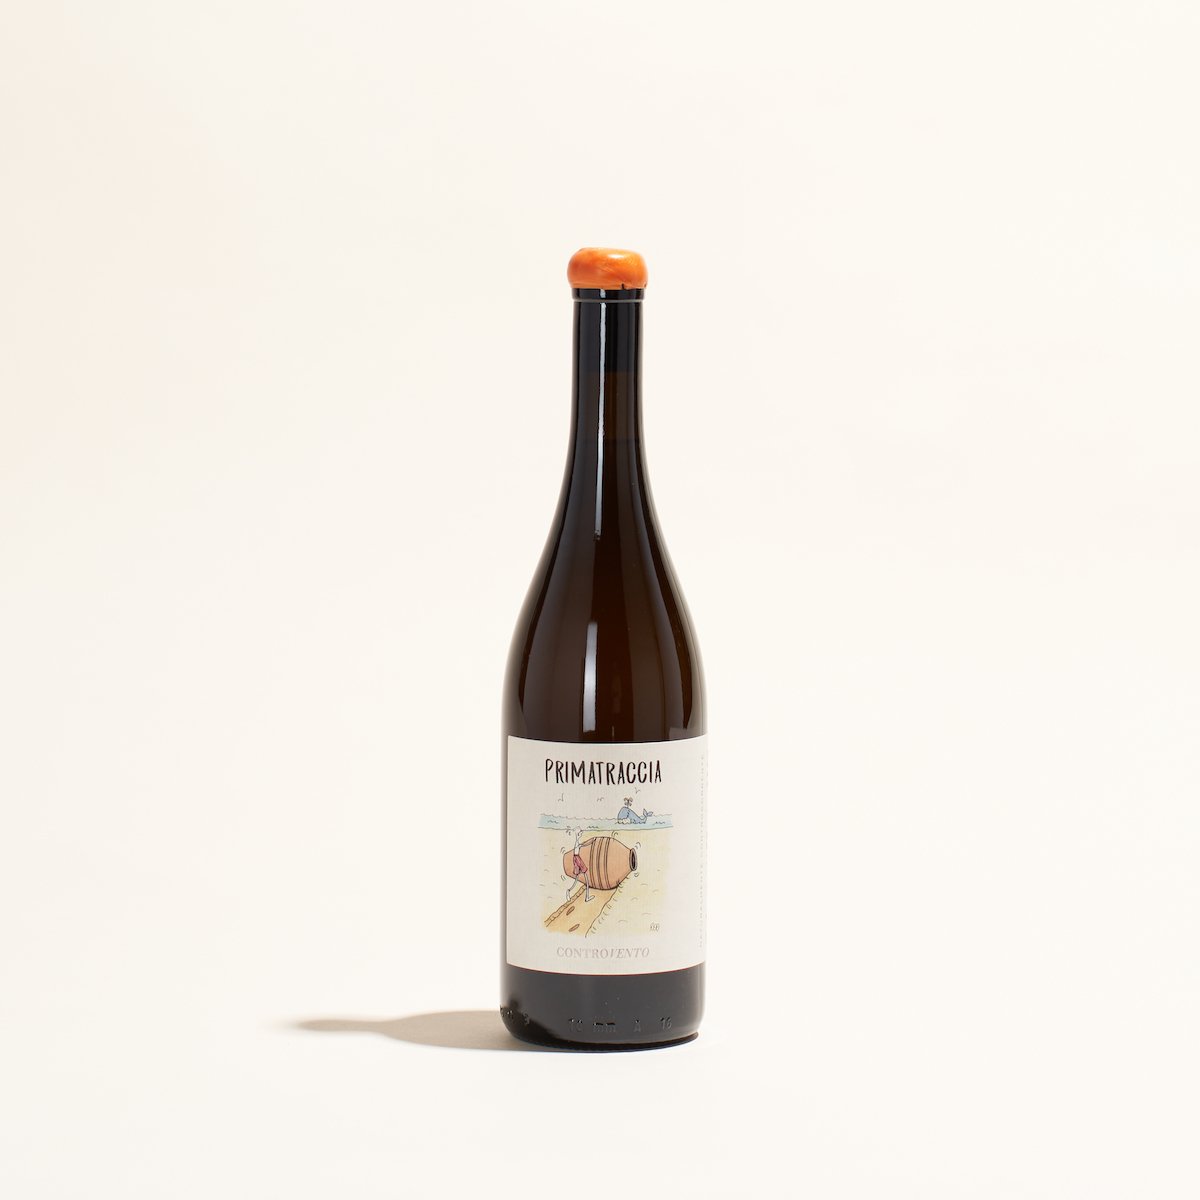 primatraccia bianco controvento natural orange wine abruzzo italy front